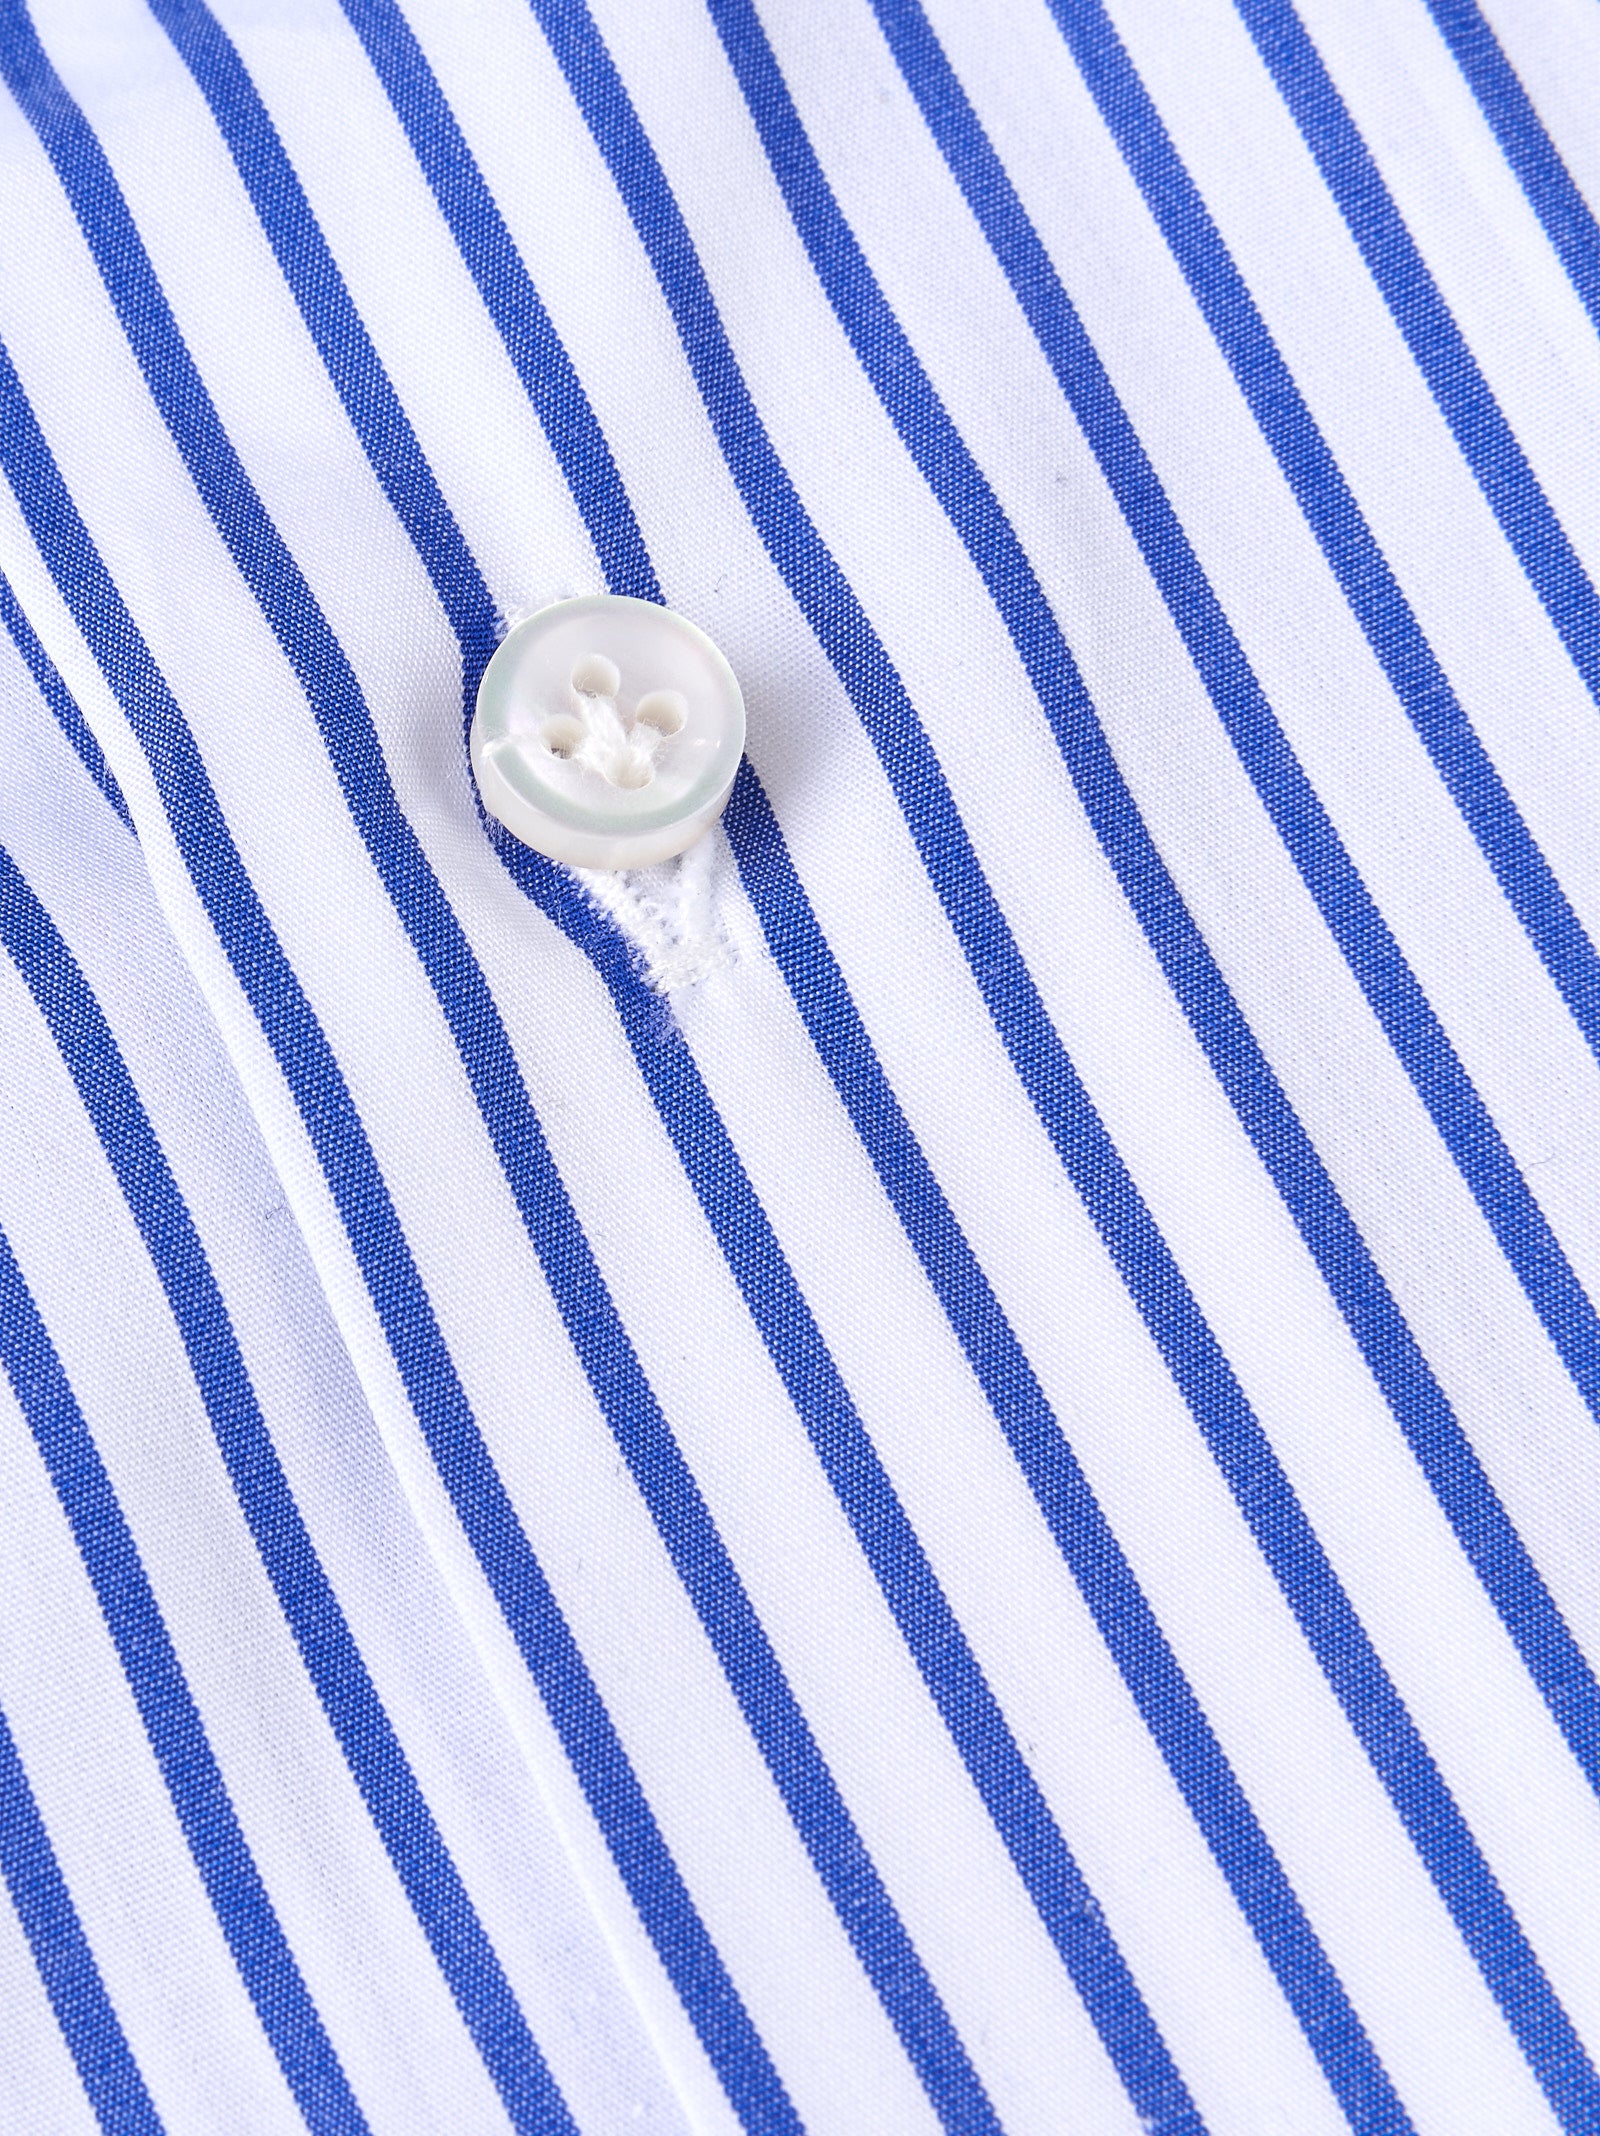 Camicia BORRIELLO
Rig.blu/bianco